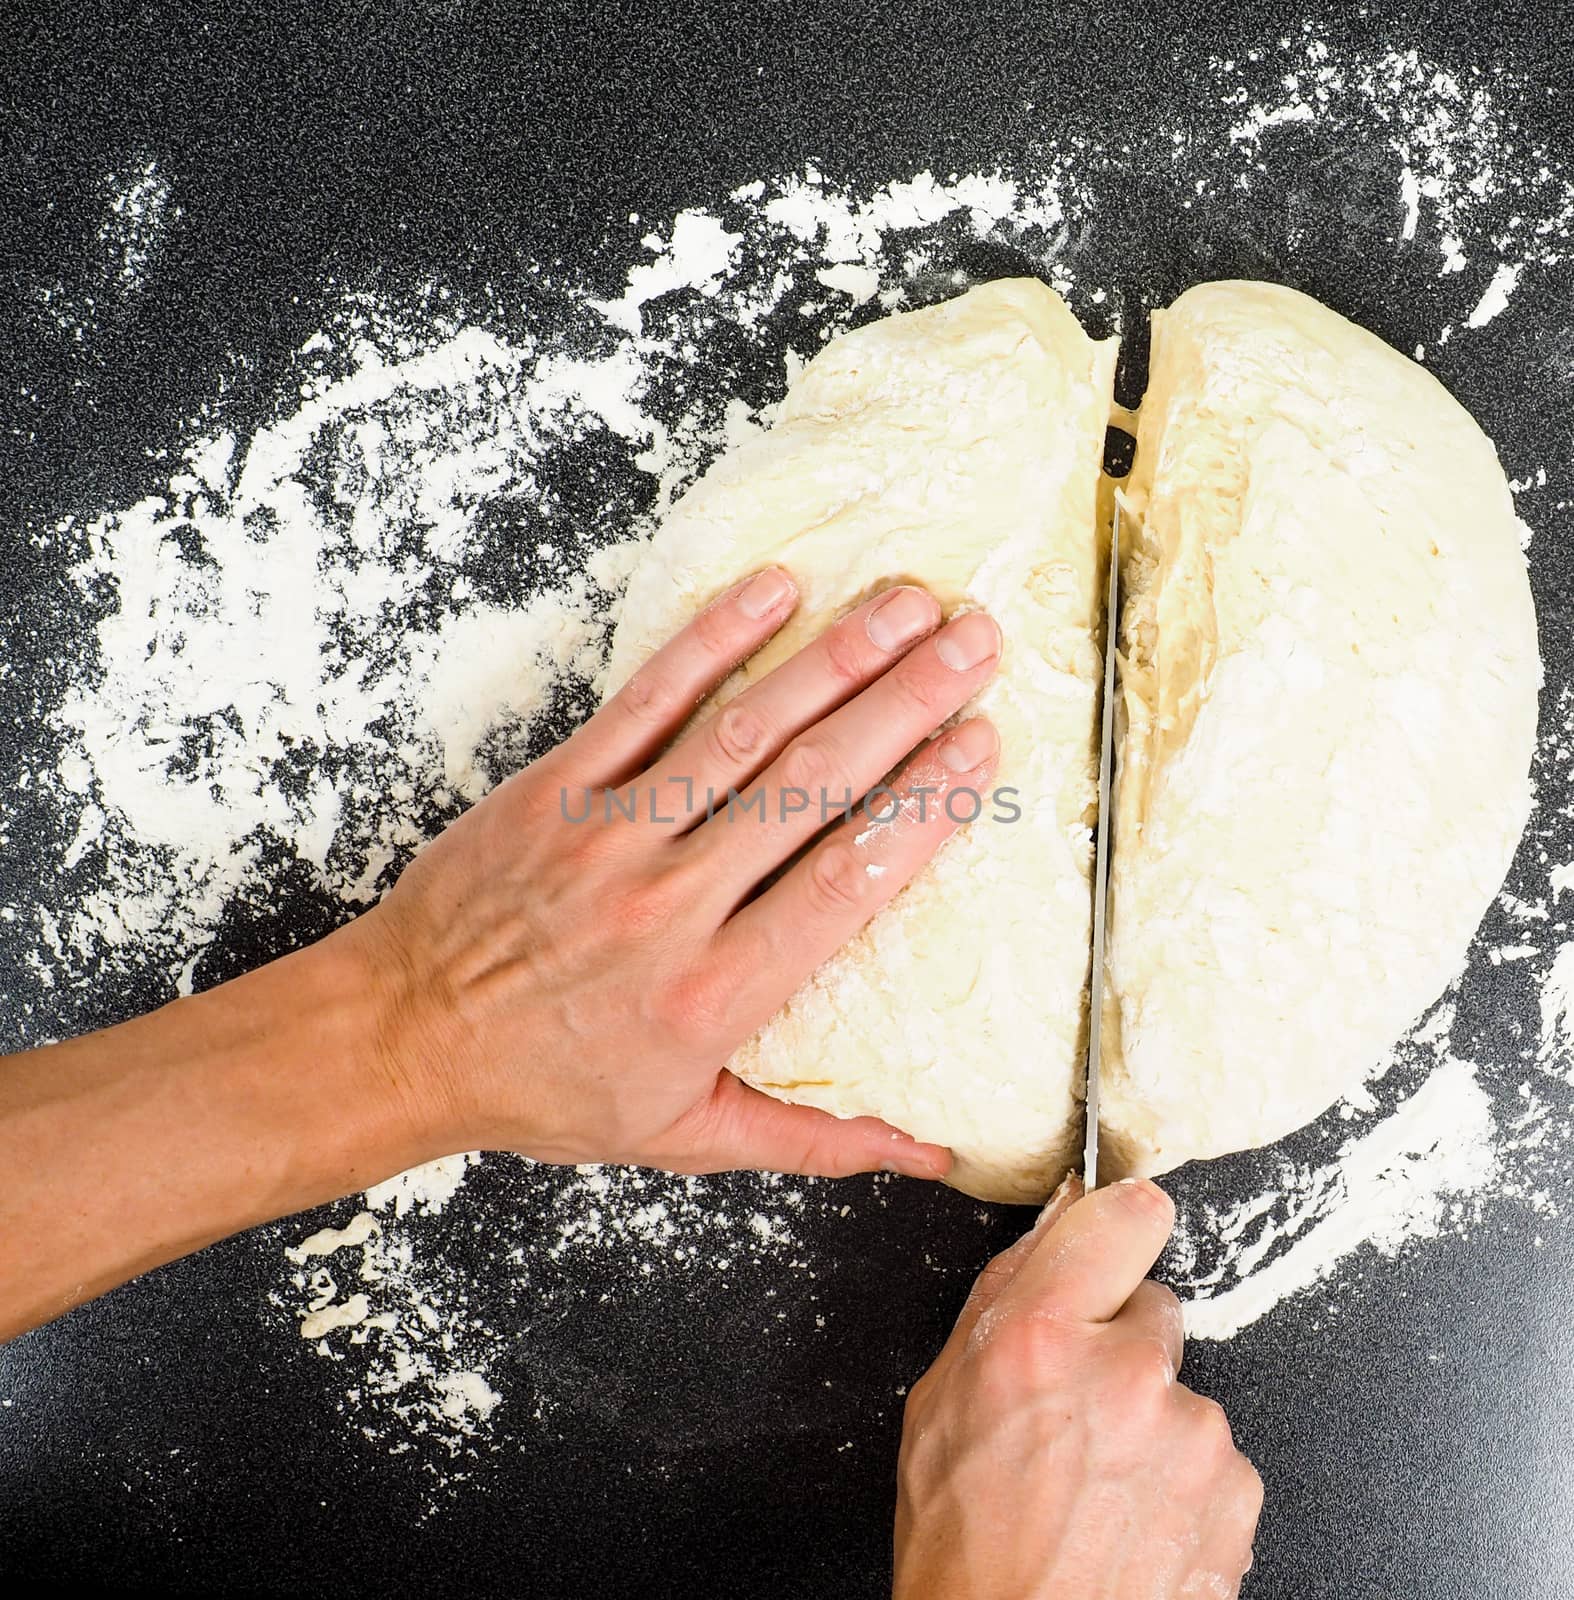 Hands cutting a lump of dough by Arvebettum